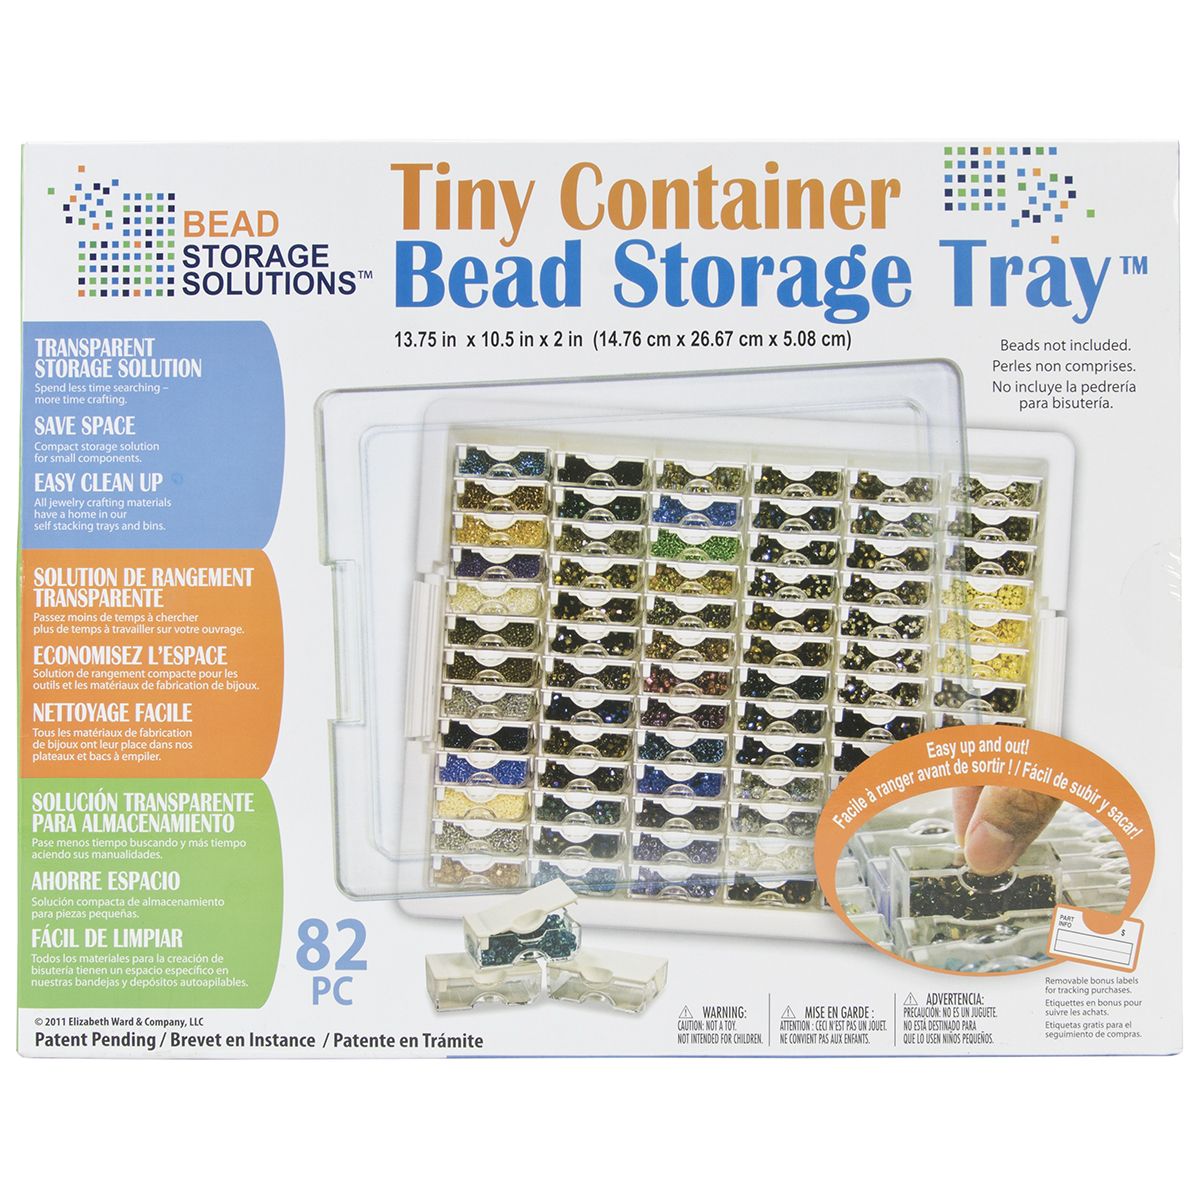 Tiny Container Bead Storage Tray